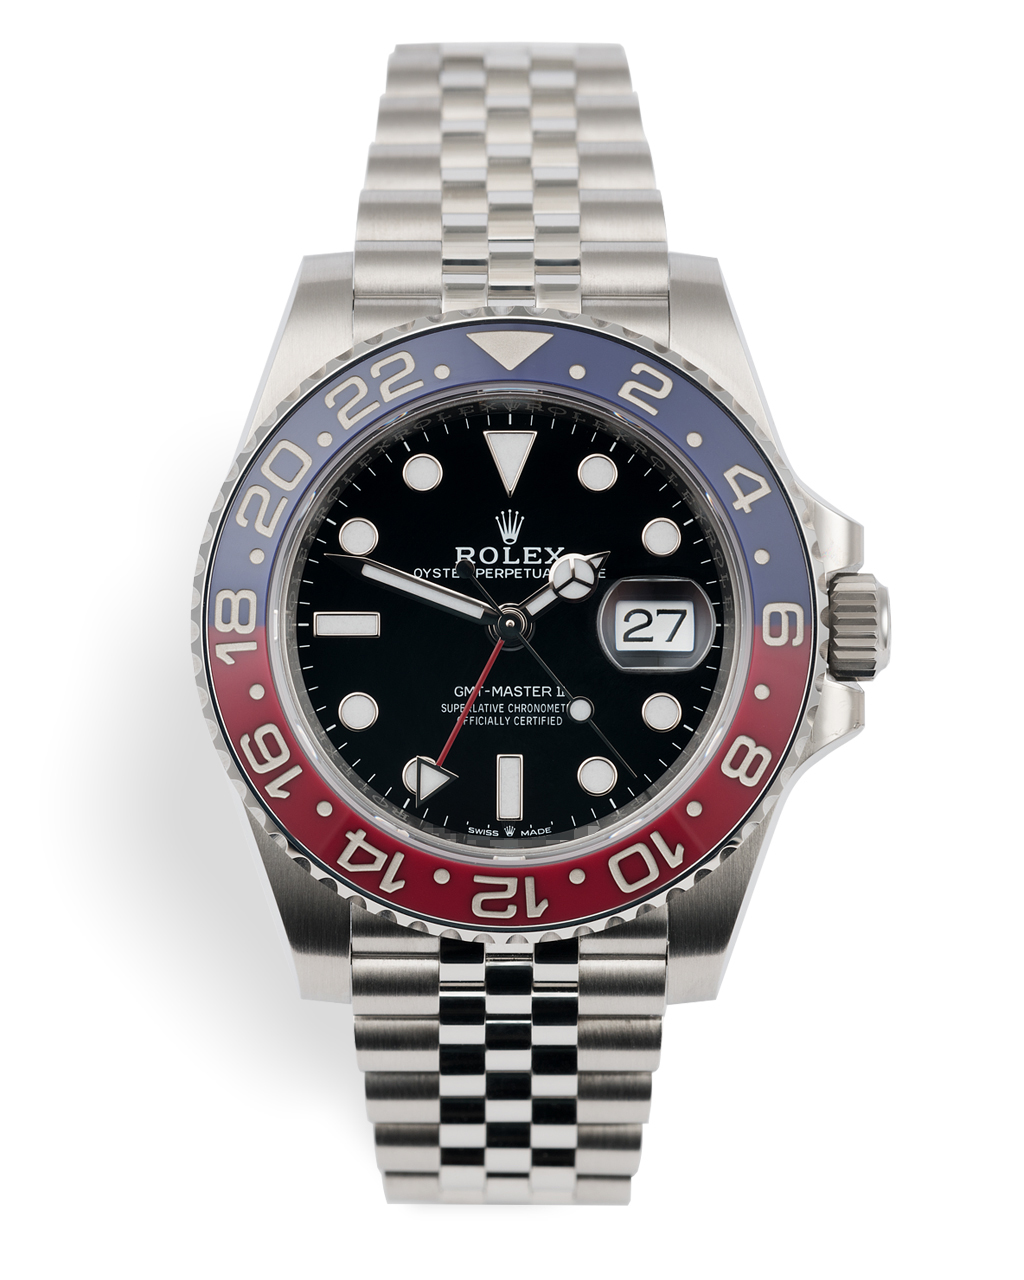 Rolex GMT-Master II Watches | ref 126710BLRO | 5 Year Warranty 'Calibre ...